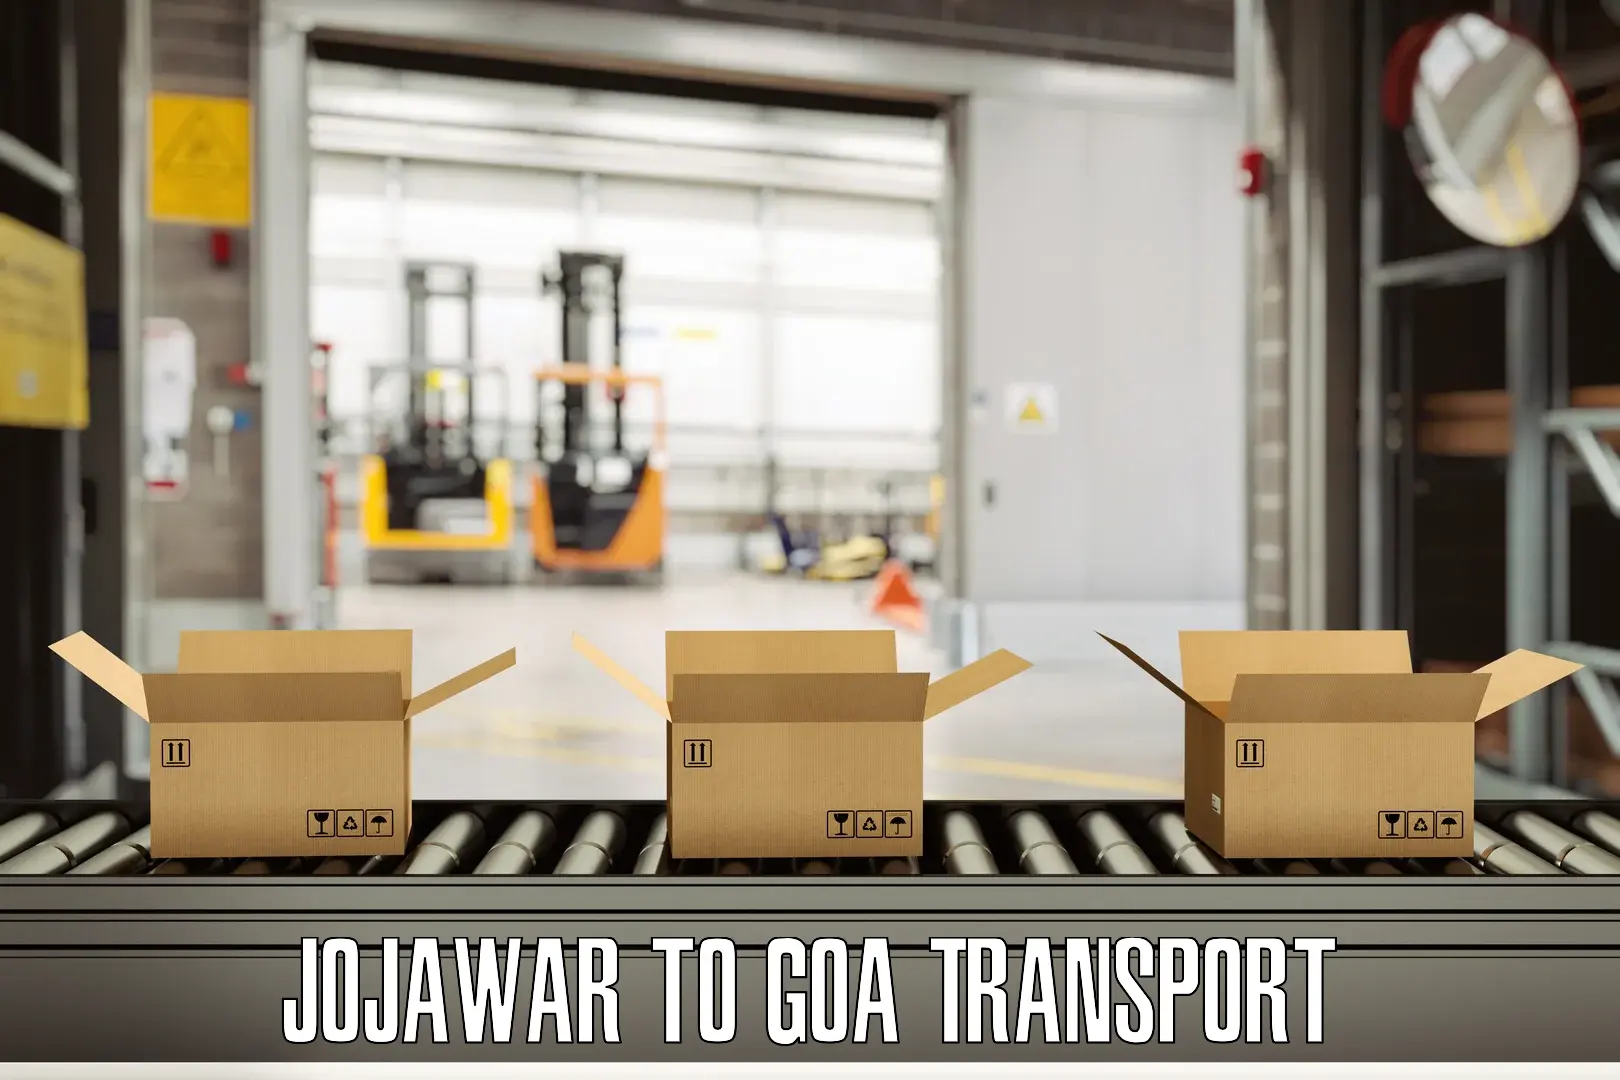 Online transport Jojawar to Bicholim